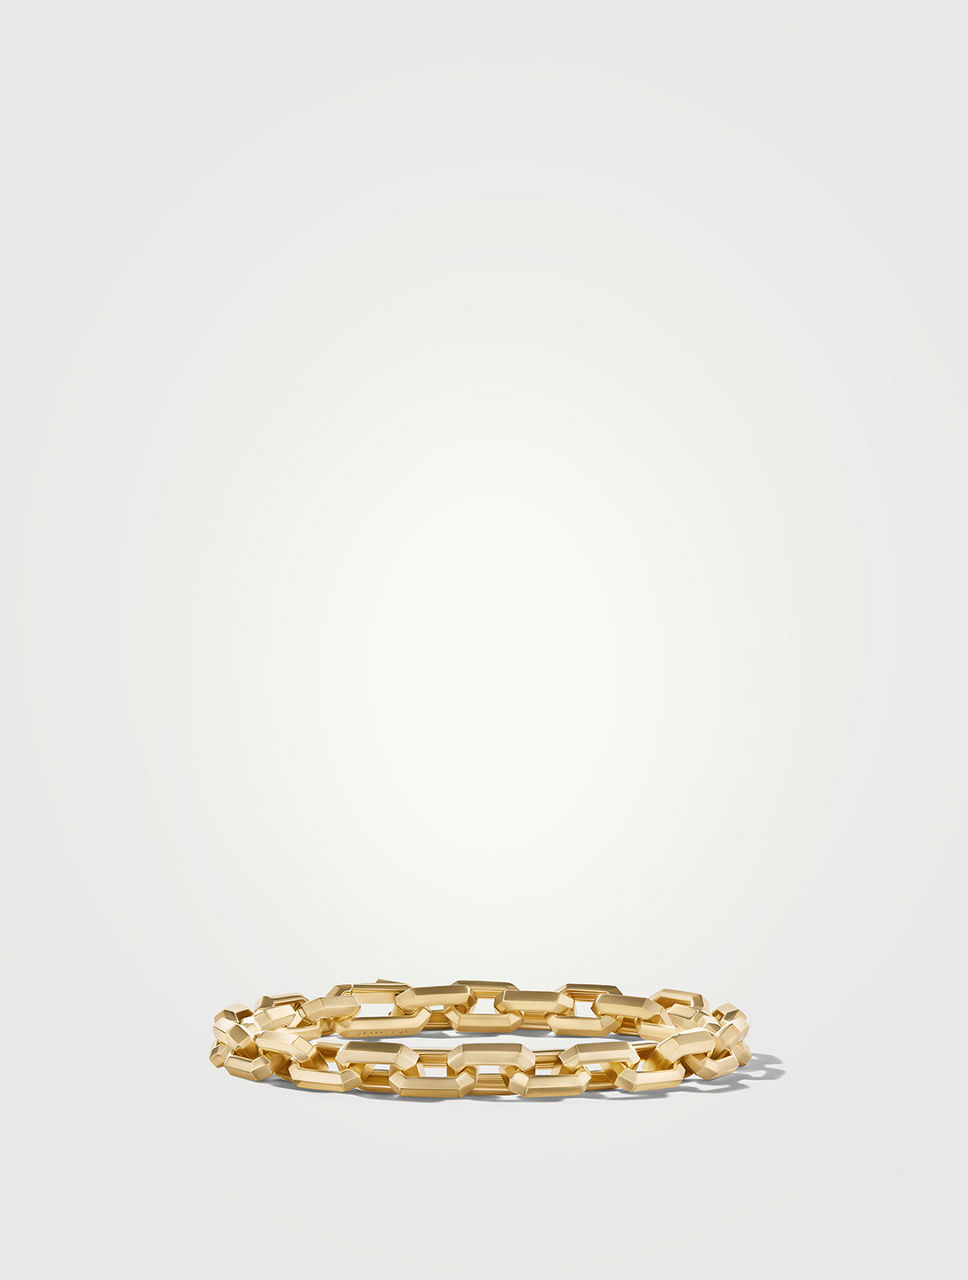 Streamline® Heirloom Chain Link Bracelet In 18k Yellow Gold, 7.5mm